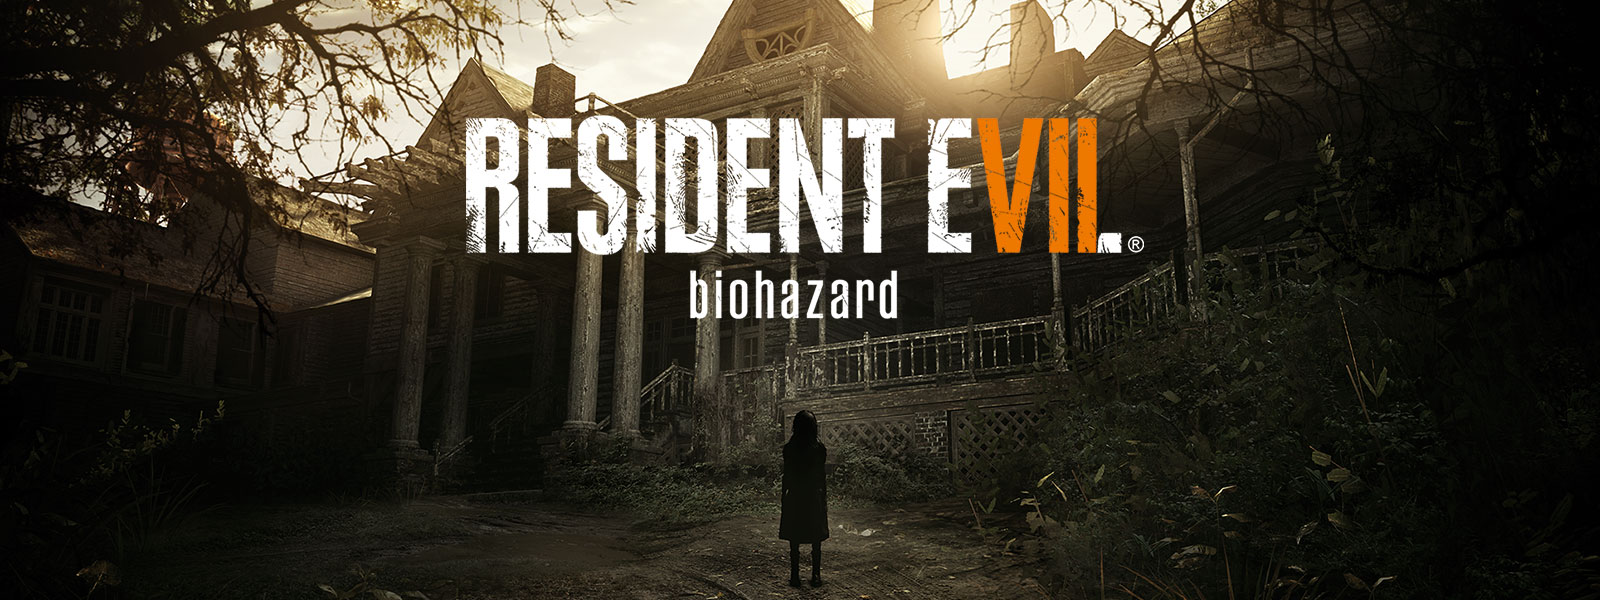 Image de la boîte Resident Evil 7 Biohazard Édition Gold sur une scène d’une petite file étrange se tenant devant une maison hantée